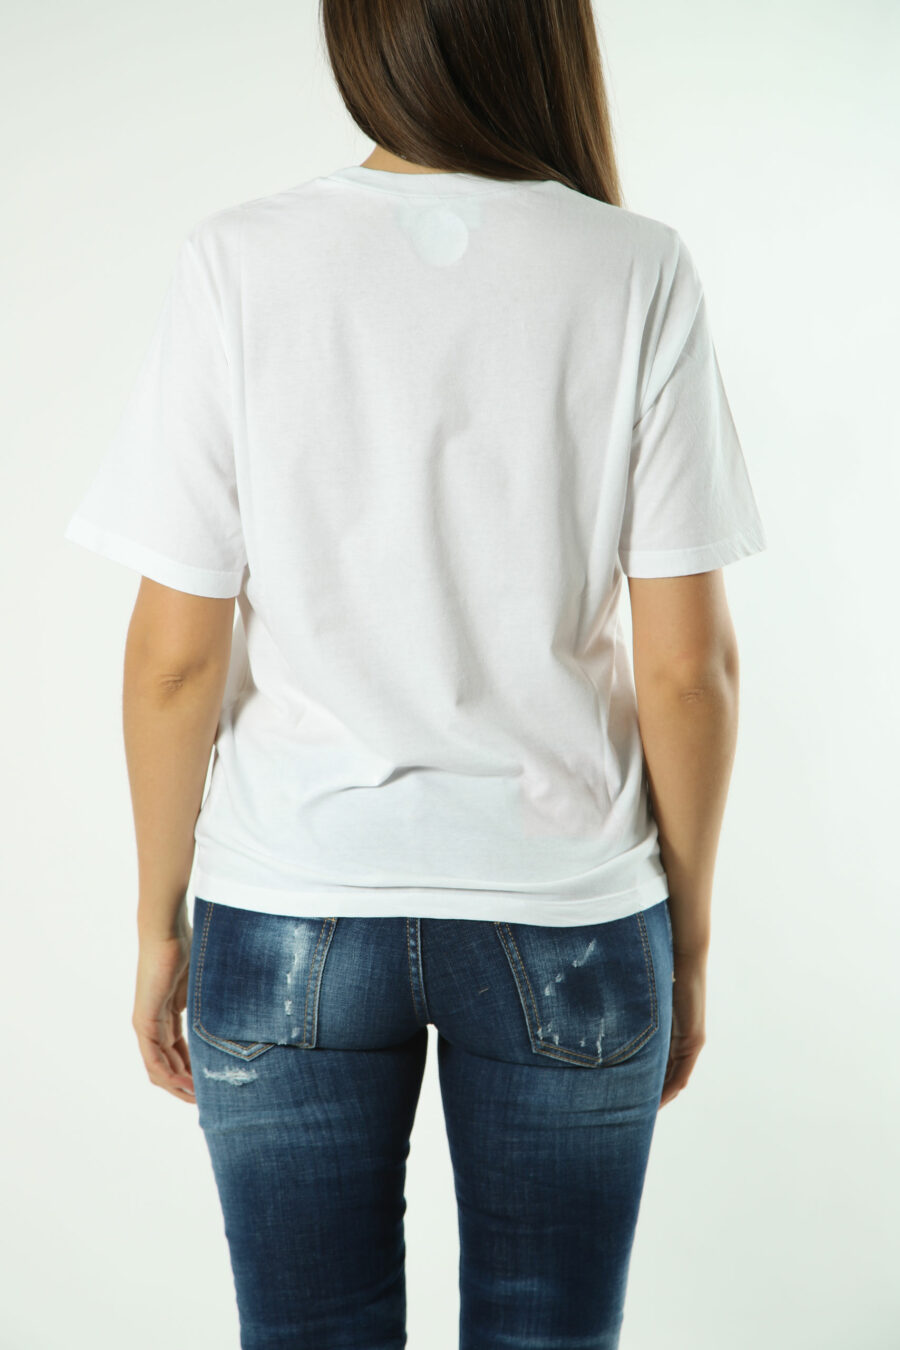 T-shirt branca com maxilogo multicolorido - Fotos 1619